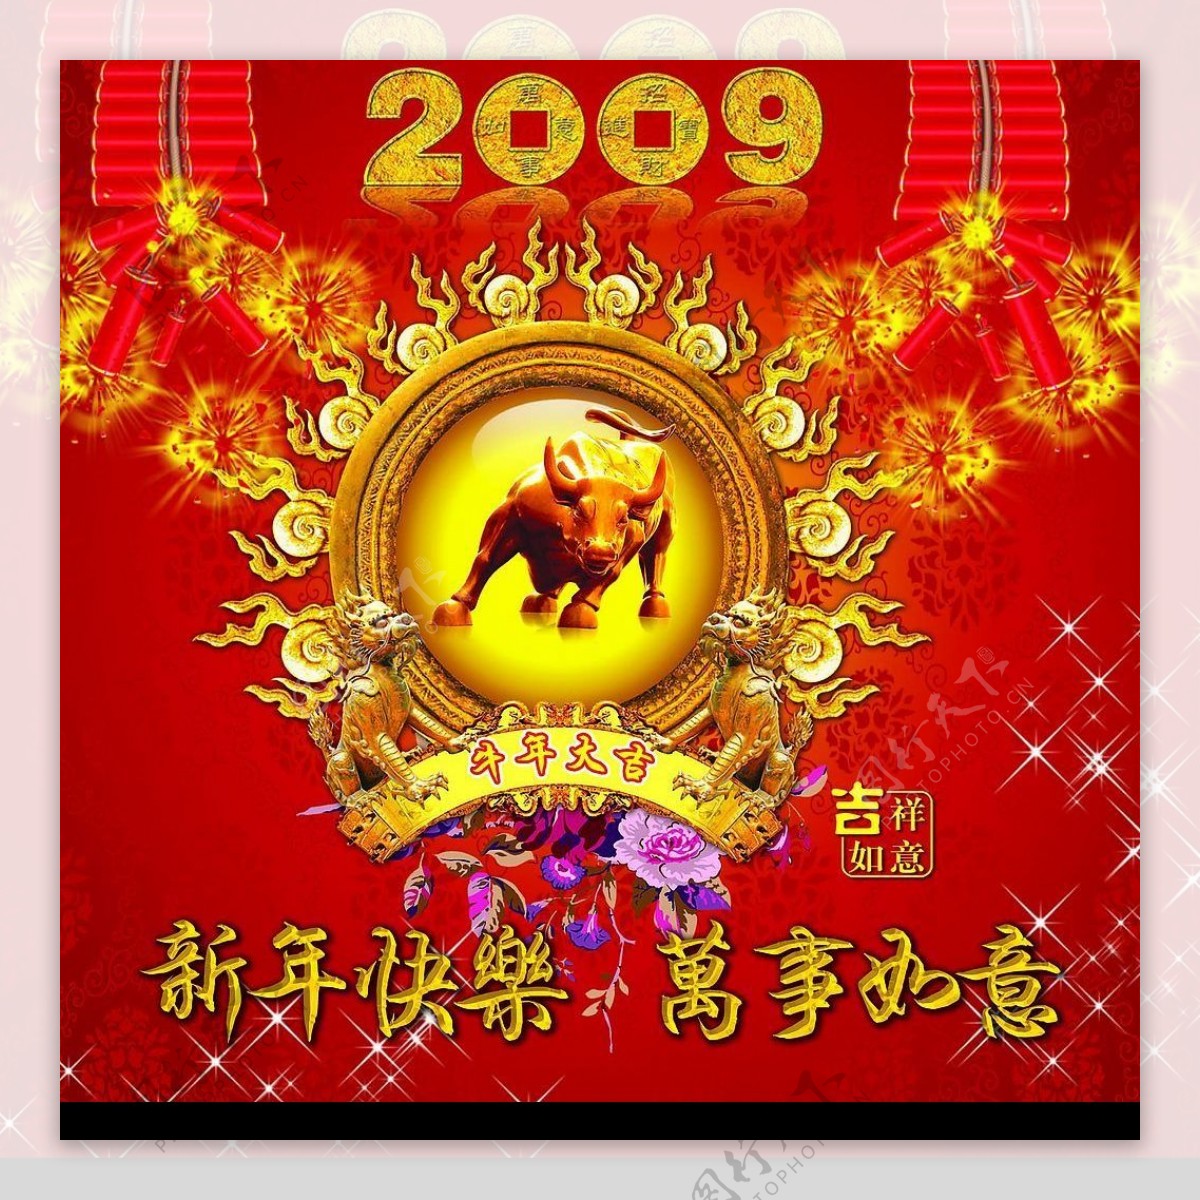 2018年恭贺新春主题春节海报模板免费下载 _广告设计图片设计素材_【包图网】